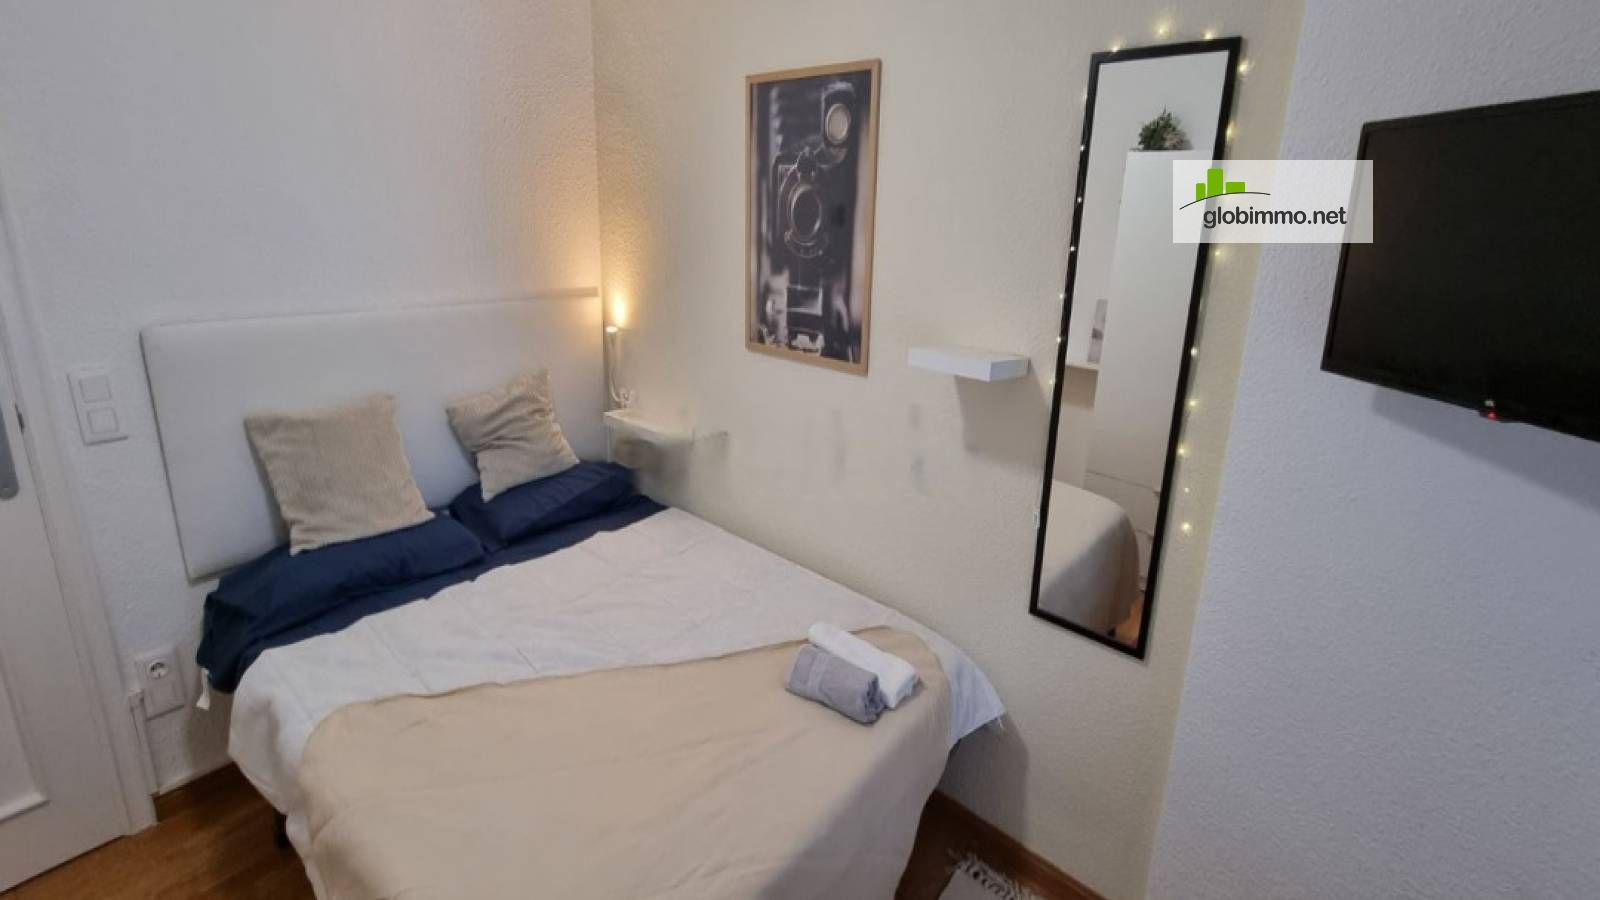 Private room Zaragoza, C. de Daroca, Room for rent in shared apartment in Zaragoza